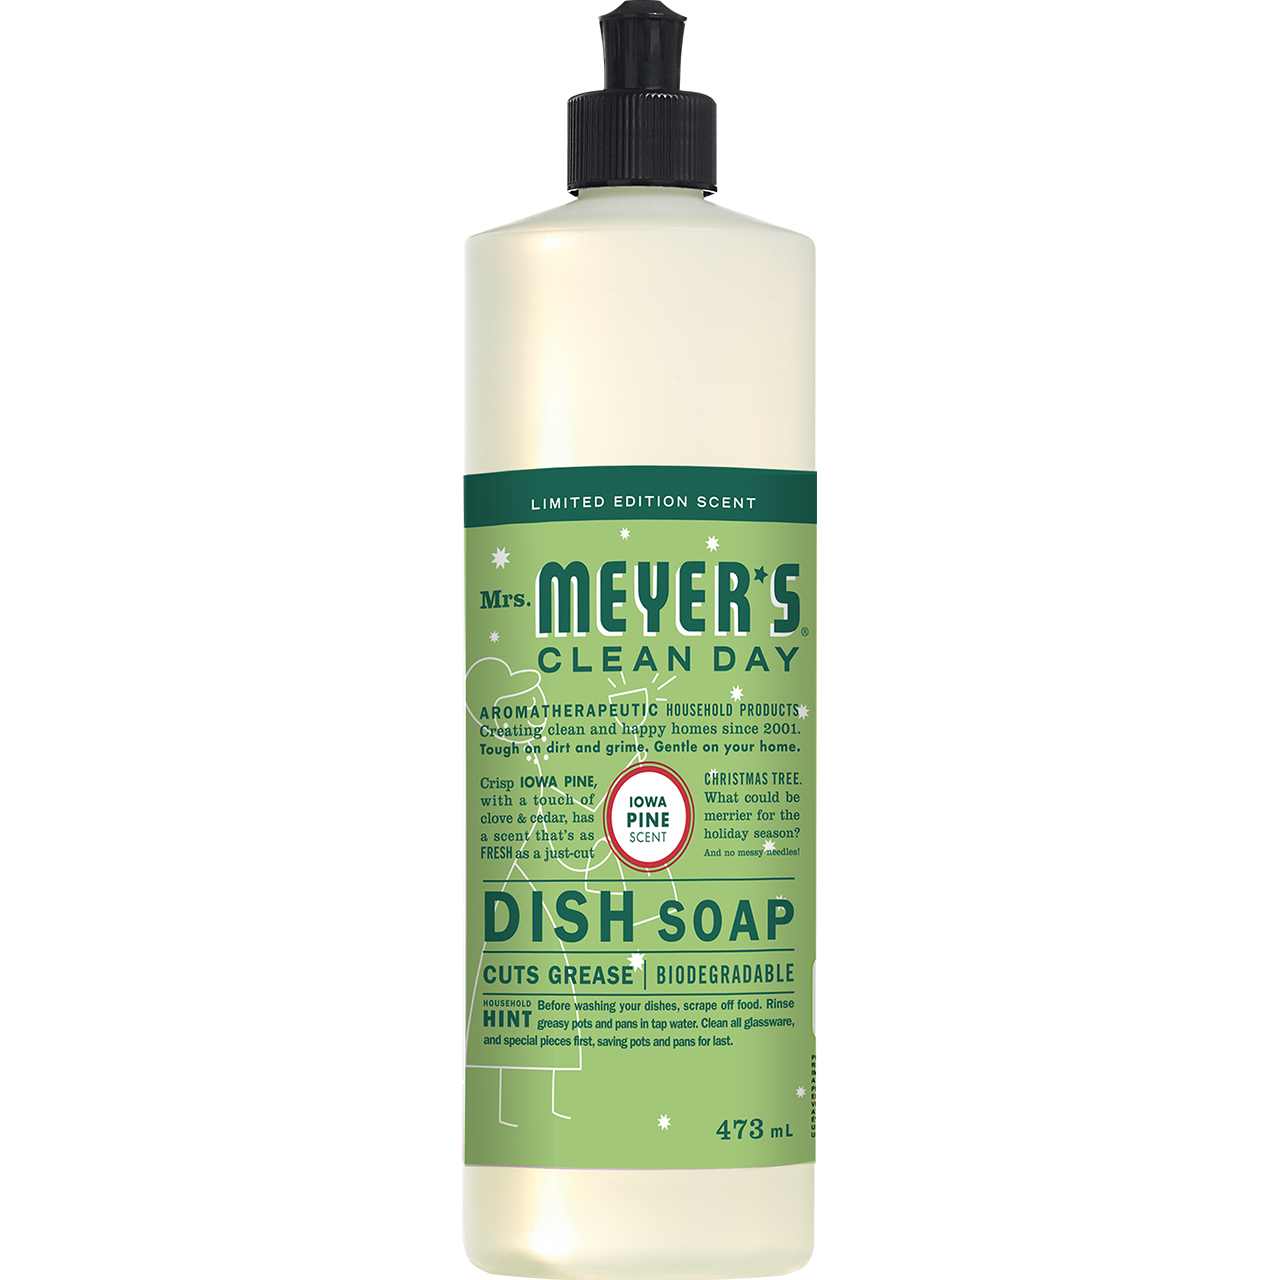 Dish Soap — Iowa Pine (Pre-order)